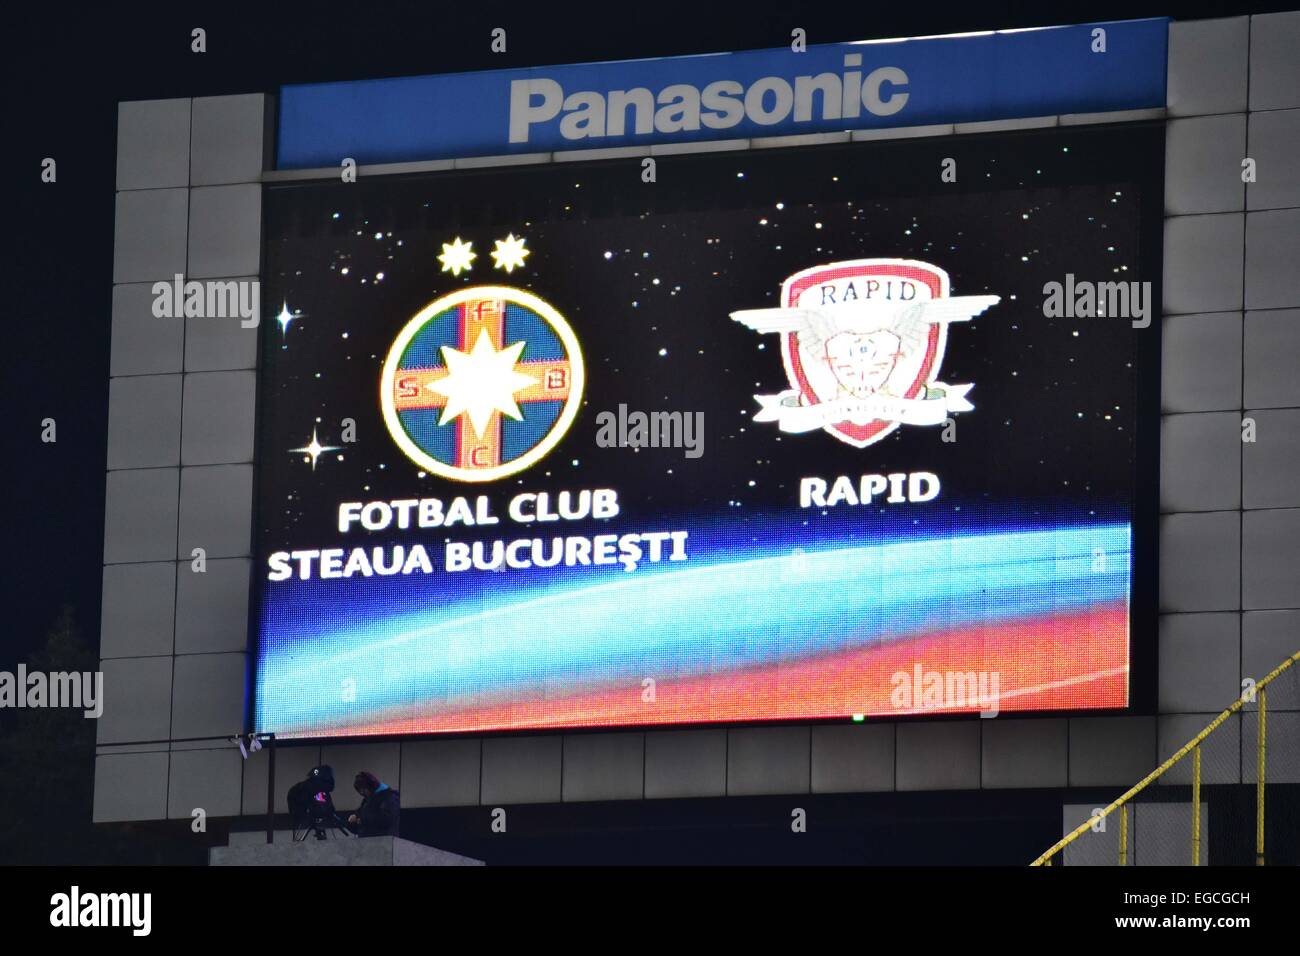 Steaua Bucuresti Resultados em Direto, Live Score, Agendados